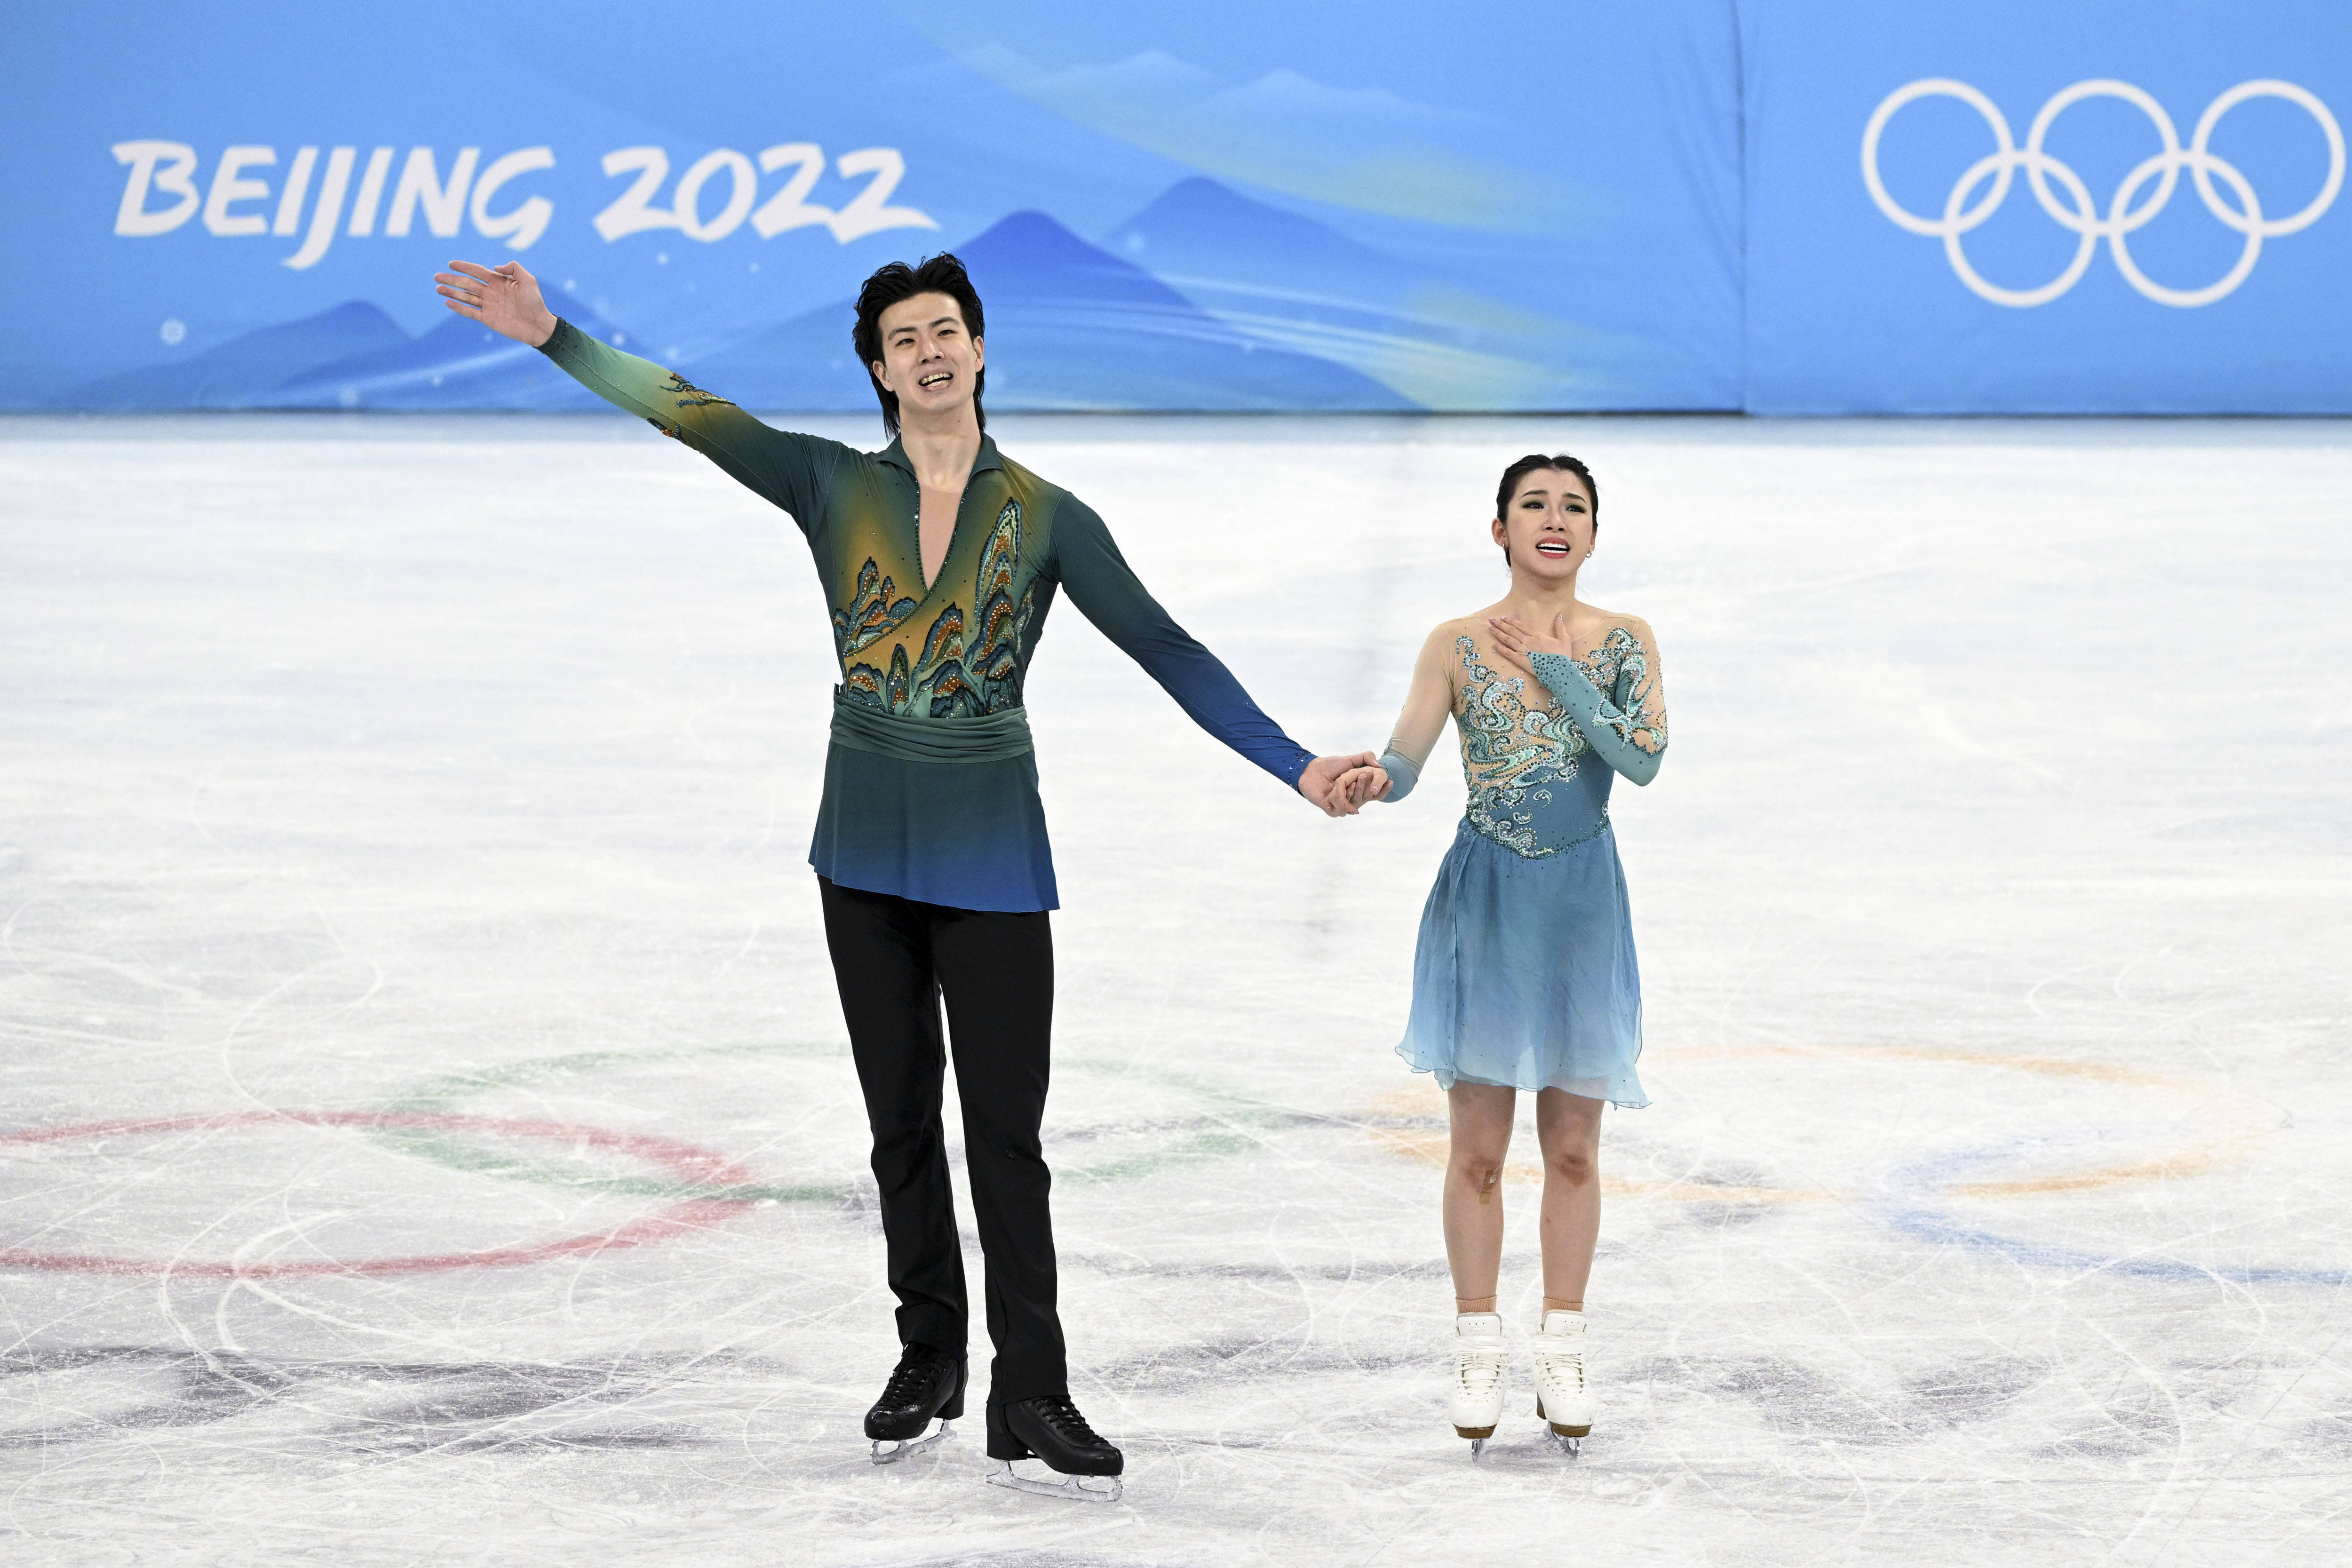 当日,北京2022年冬奥会花样滑冰冰上舞蹈自由舞比赛在首都体育馆举行.